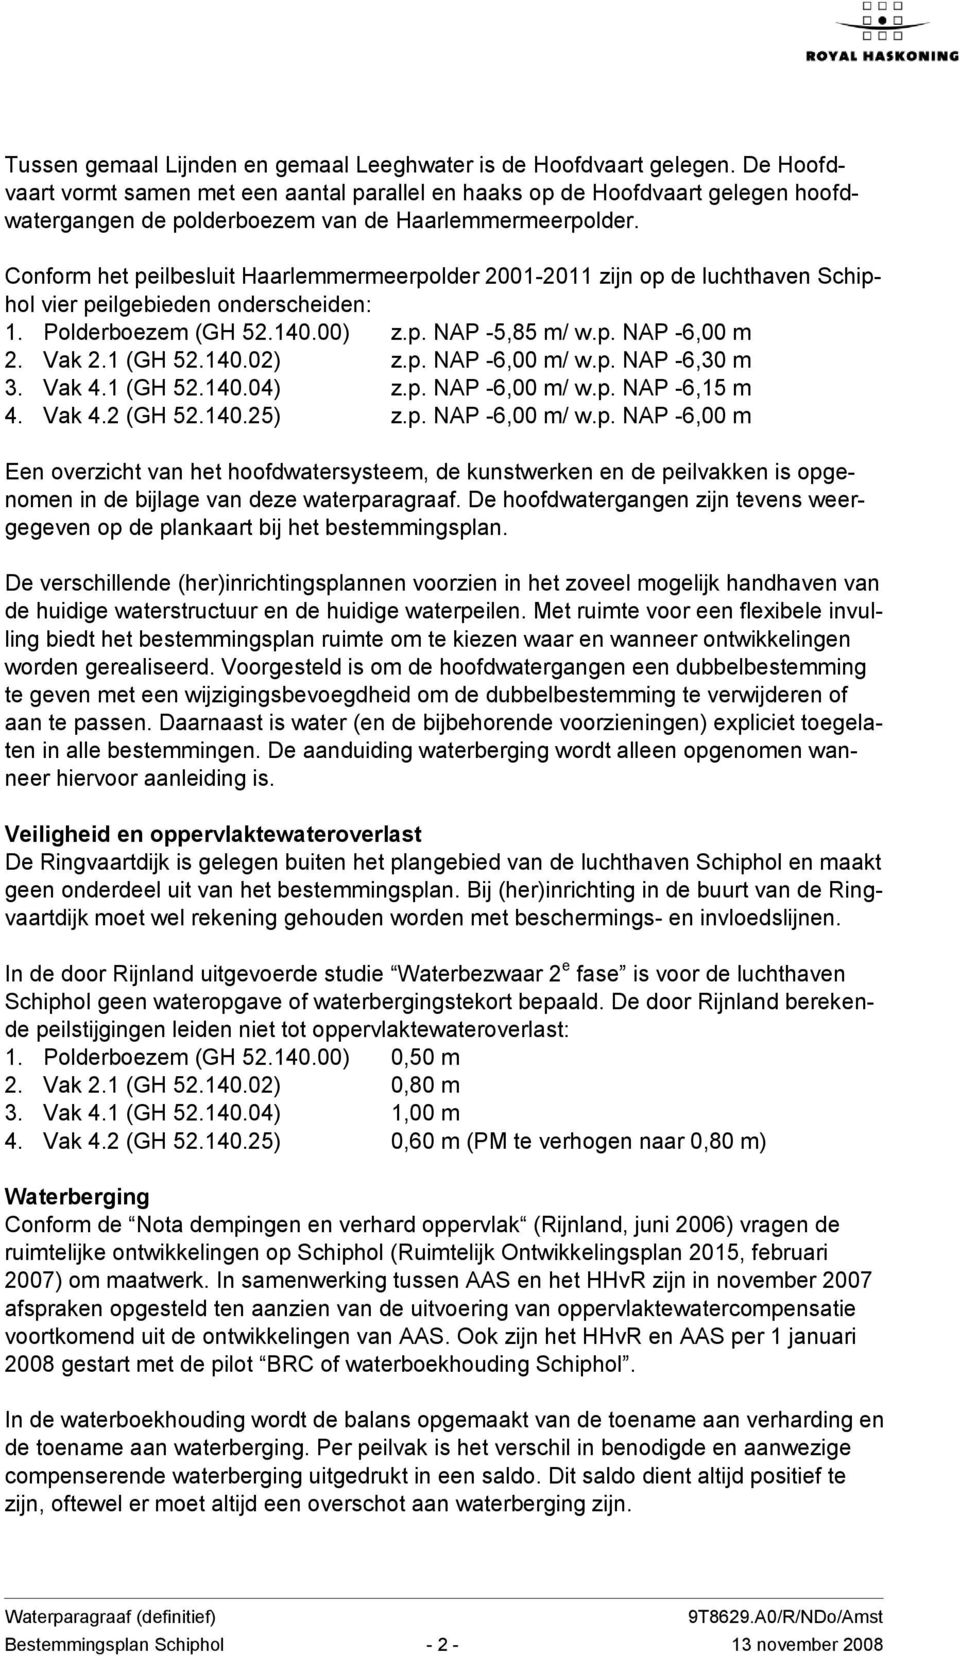 Conform het peilbesluit Haarlemmermeerpolder 2001-2011 zijn op de luchthaven Schiphol vier peilgebieden onderscheiden: 1. Polderboezem (GH 52.140.00) z.p. NAP -5,85 m/ w.p. NAP -6,00 m 2. Vak 2.